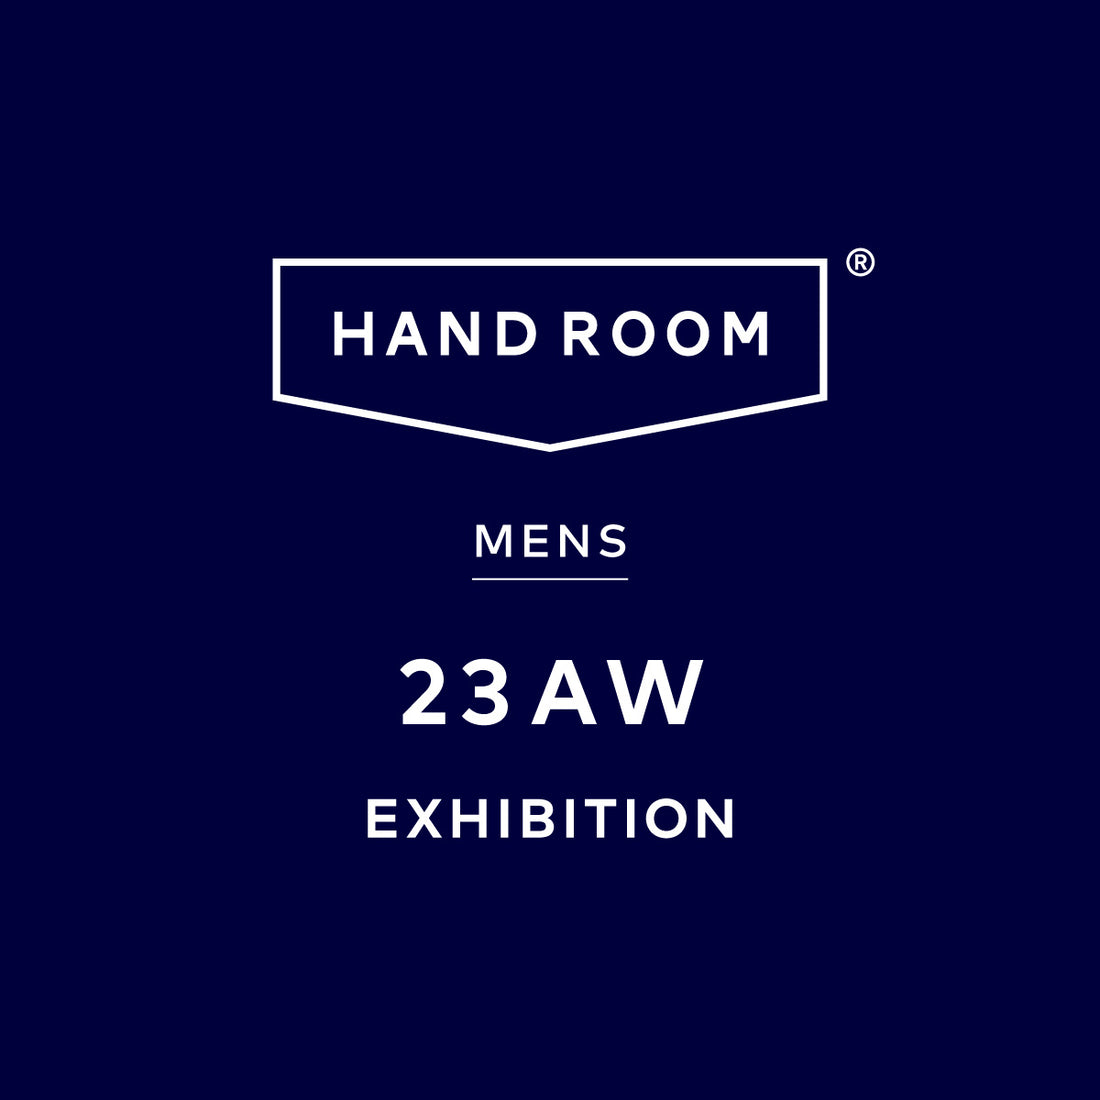 HAND ROOM 23AWの展示会を開催します。